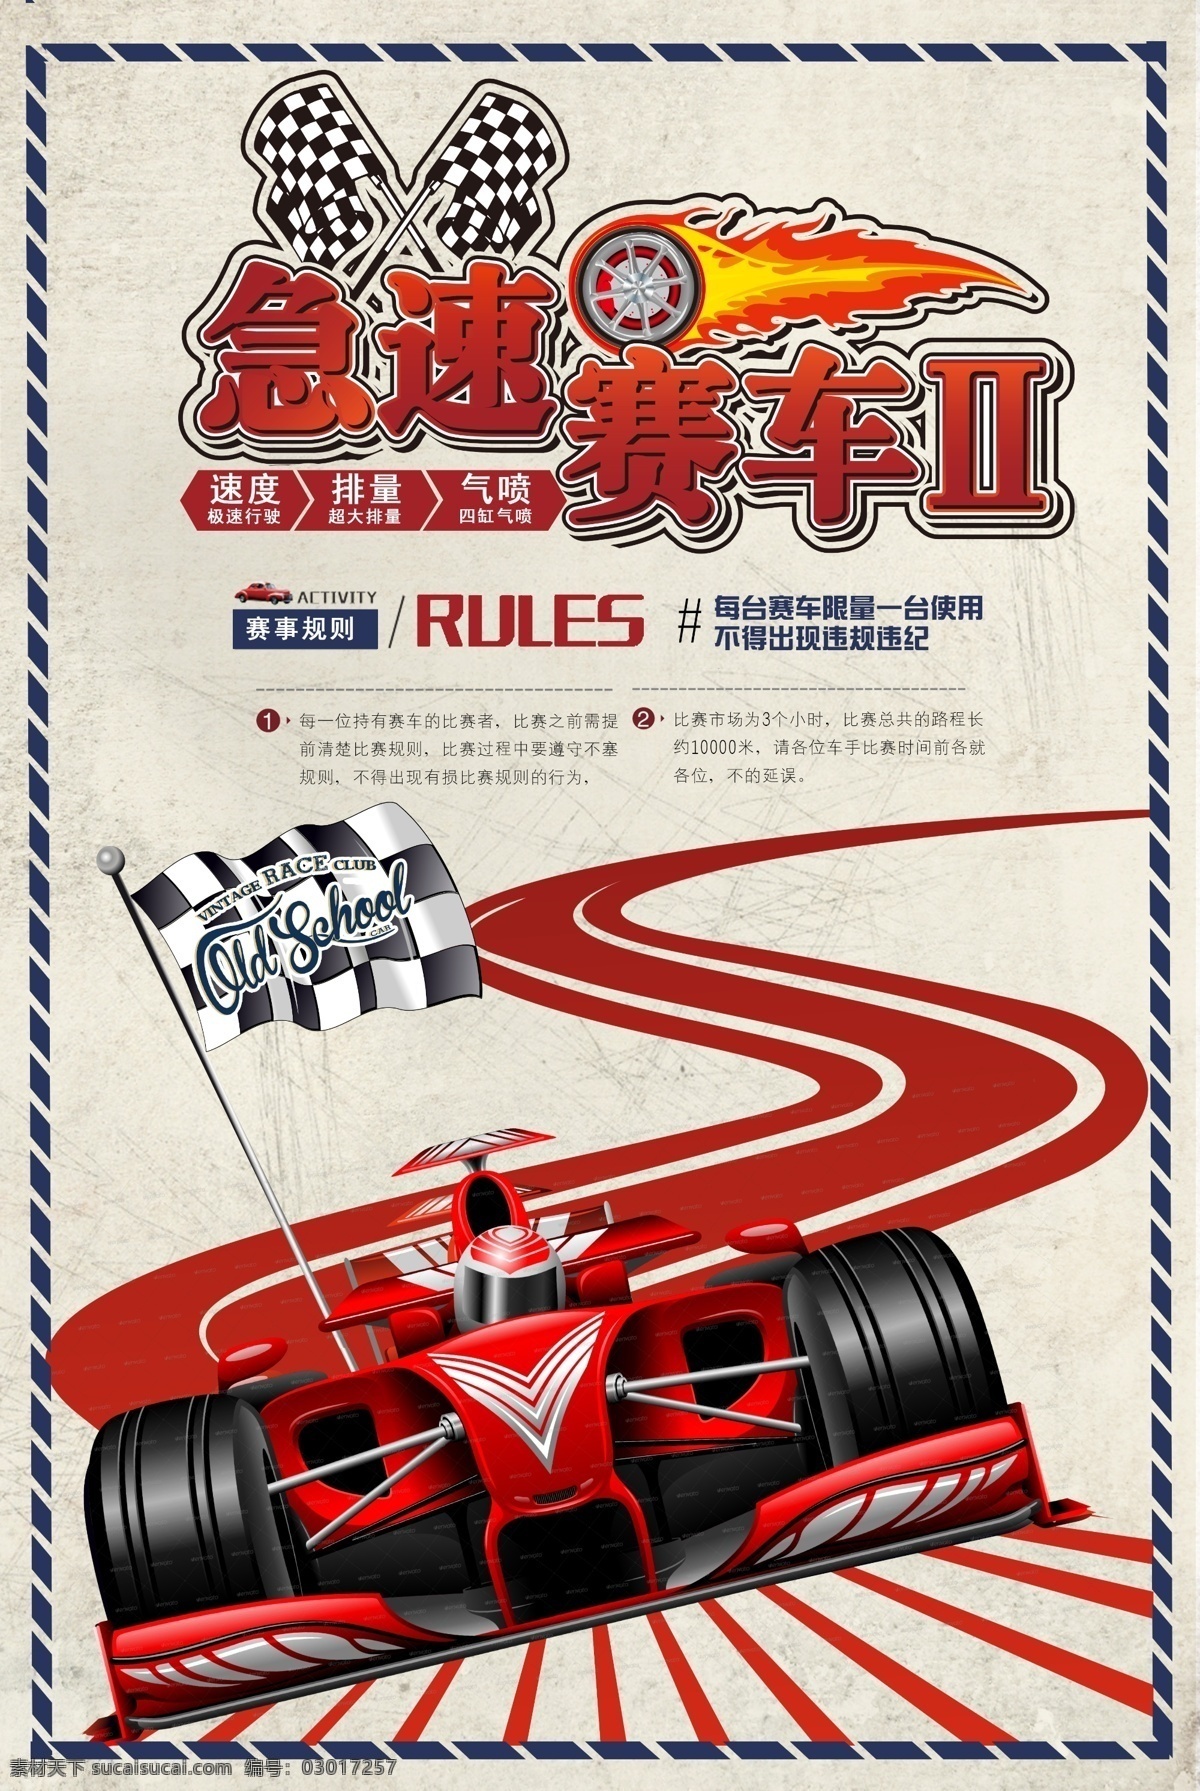 急速 赛车 竞技 比赛 宣传海报 急速赛车 宣传 海报